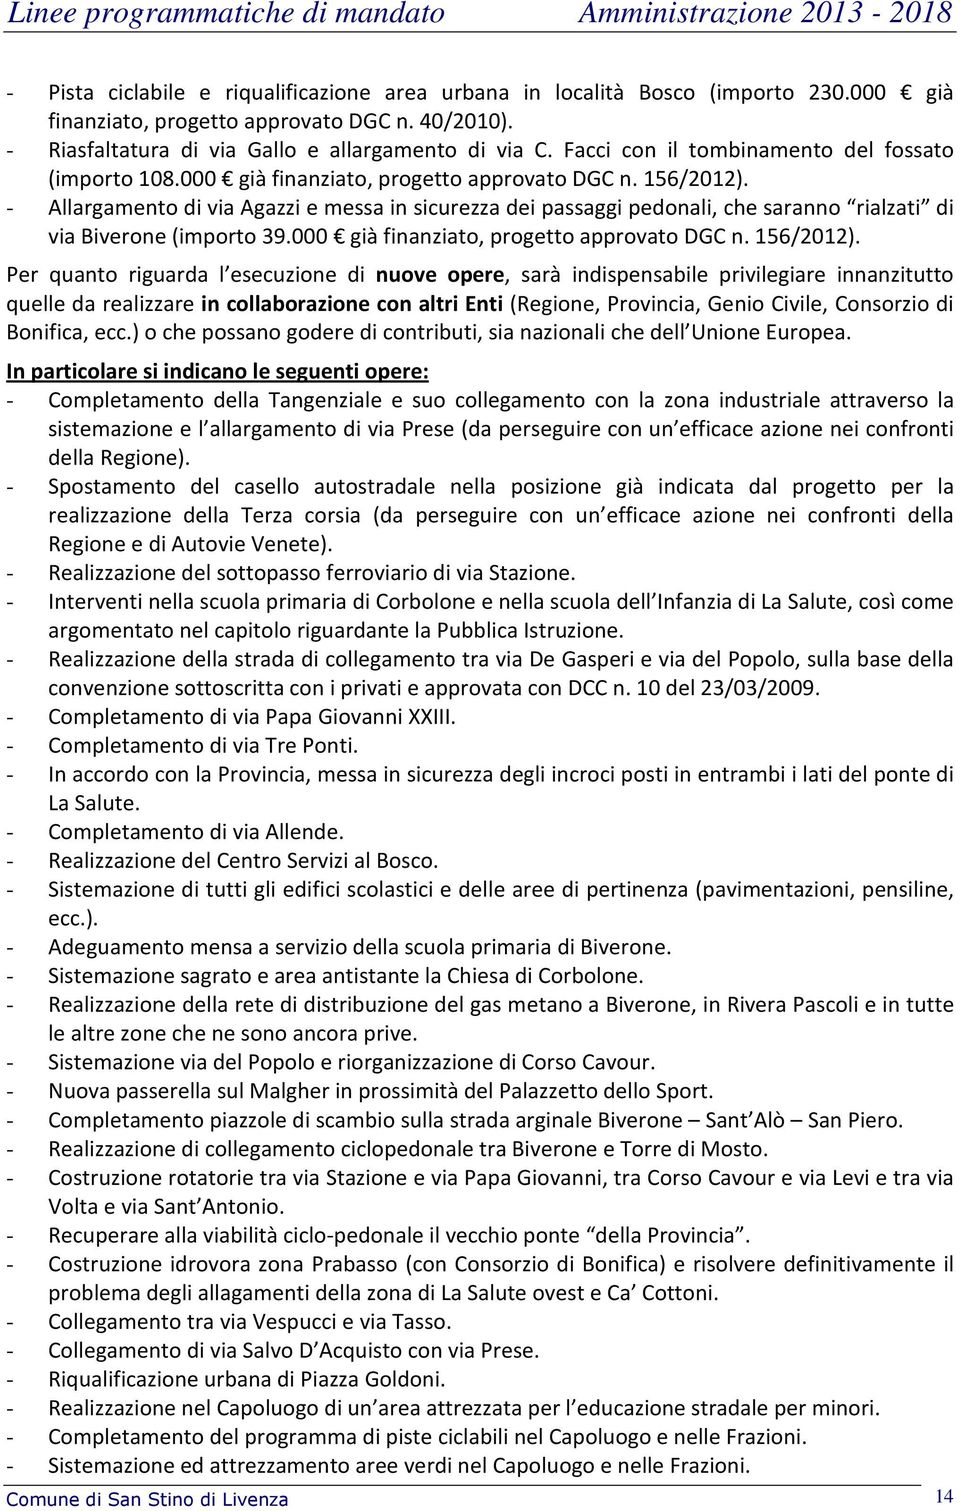 - Allargamento di via Agazzi e messa in sicurezza dei passaggi pedonali, che saranno rialzati di via Biverone (importo 39.000 già finanziato, progetto approvato DGC n. 156/2012).